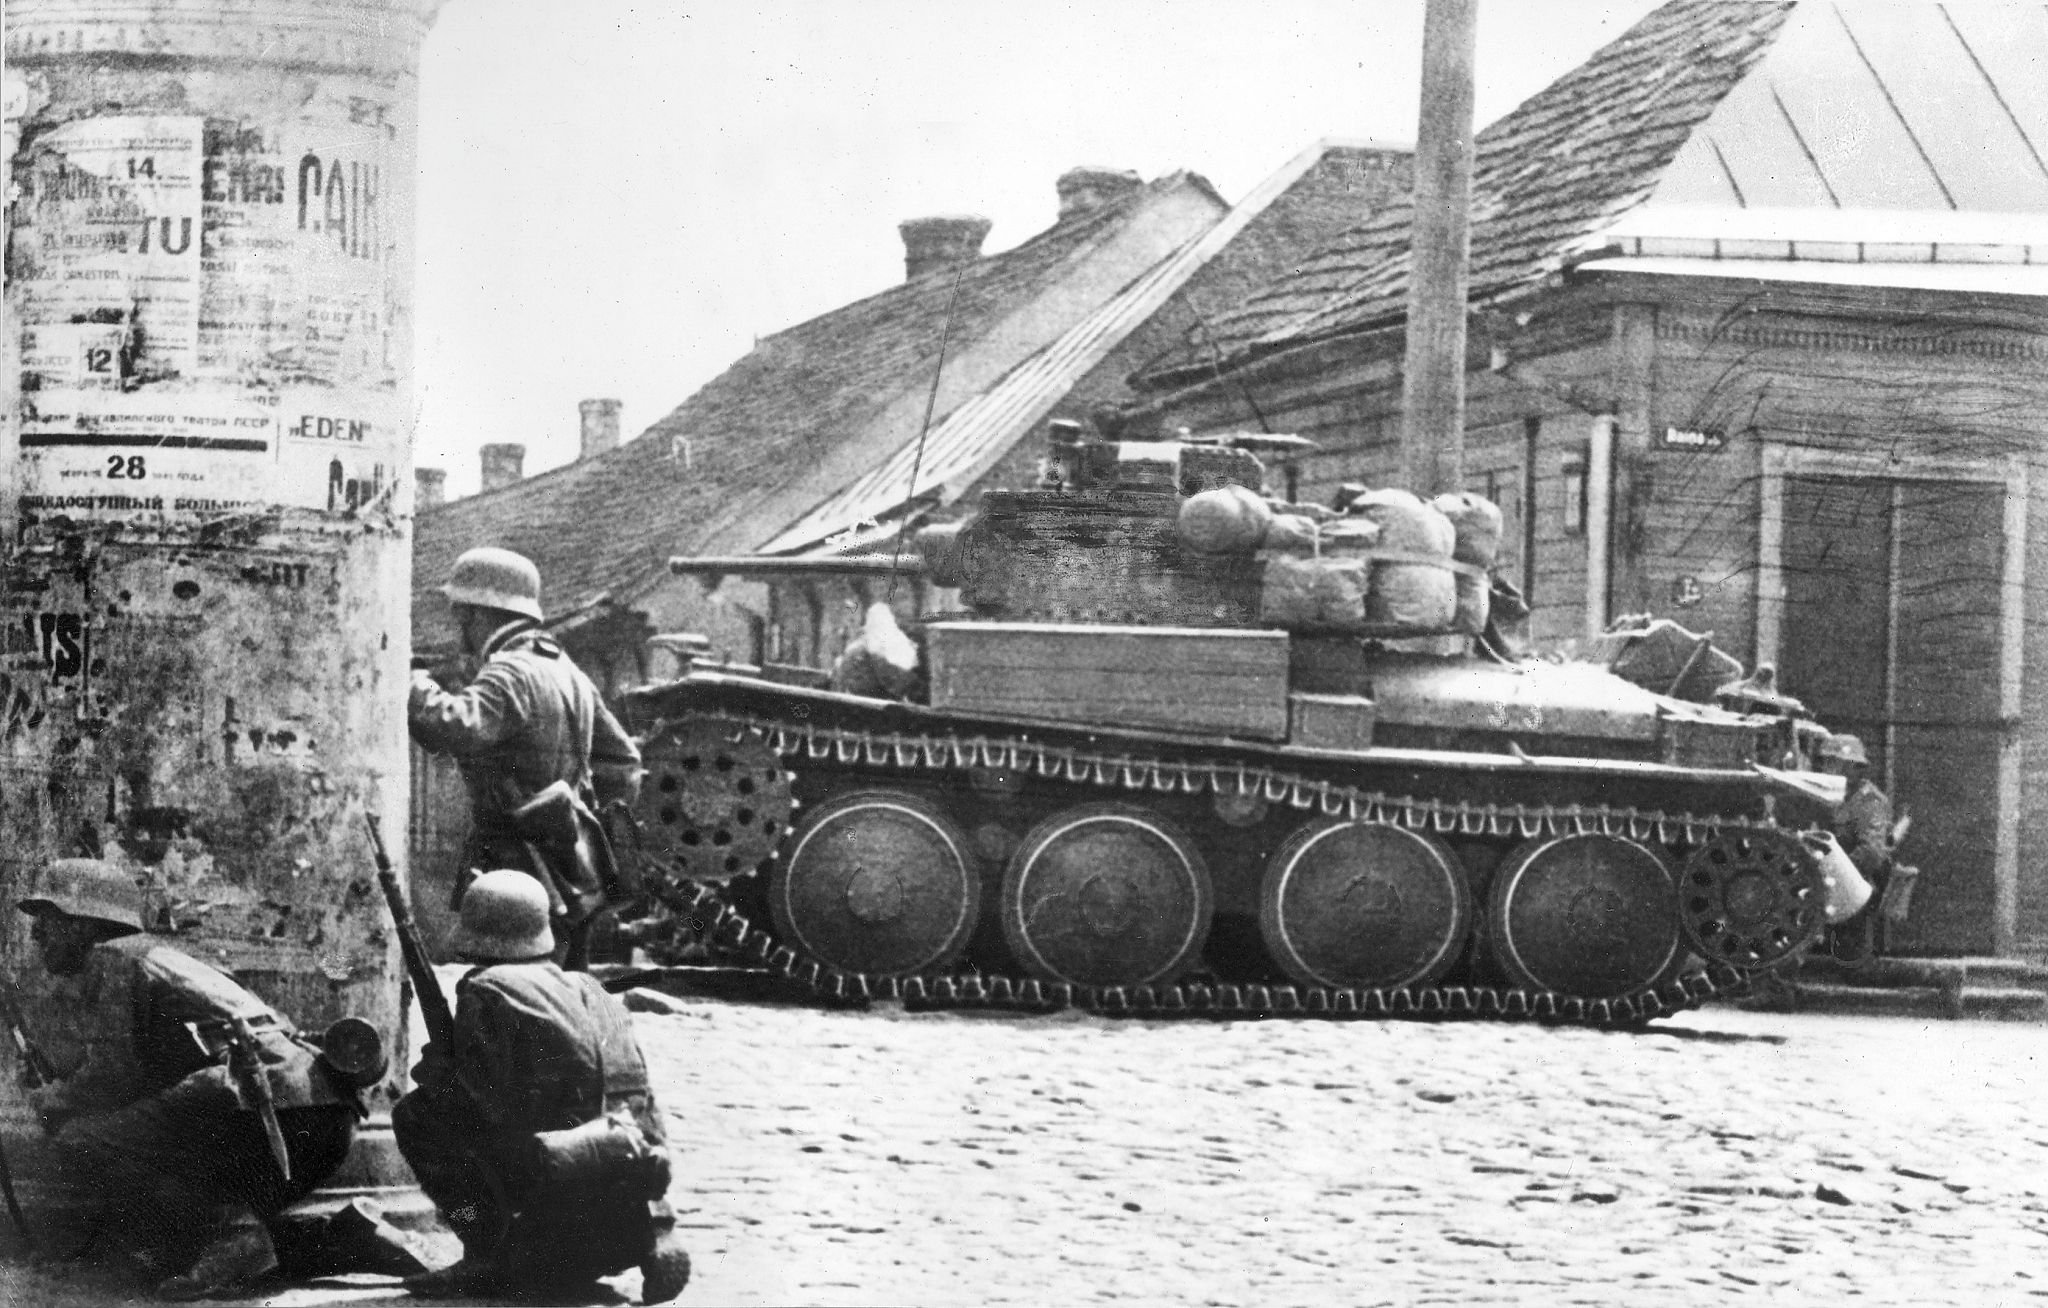 General 2048x1308 Wehrmacht World War II tank monochrome soldier men helmet gun military vehicle military uniform infantry German tanks